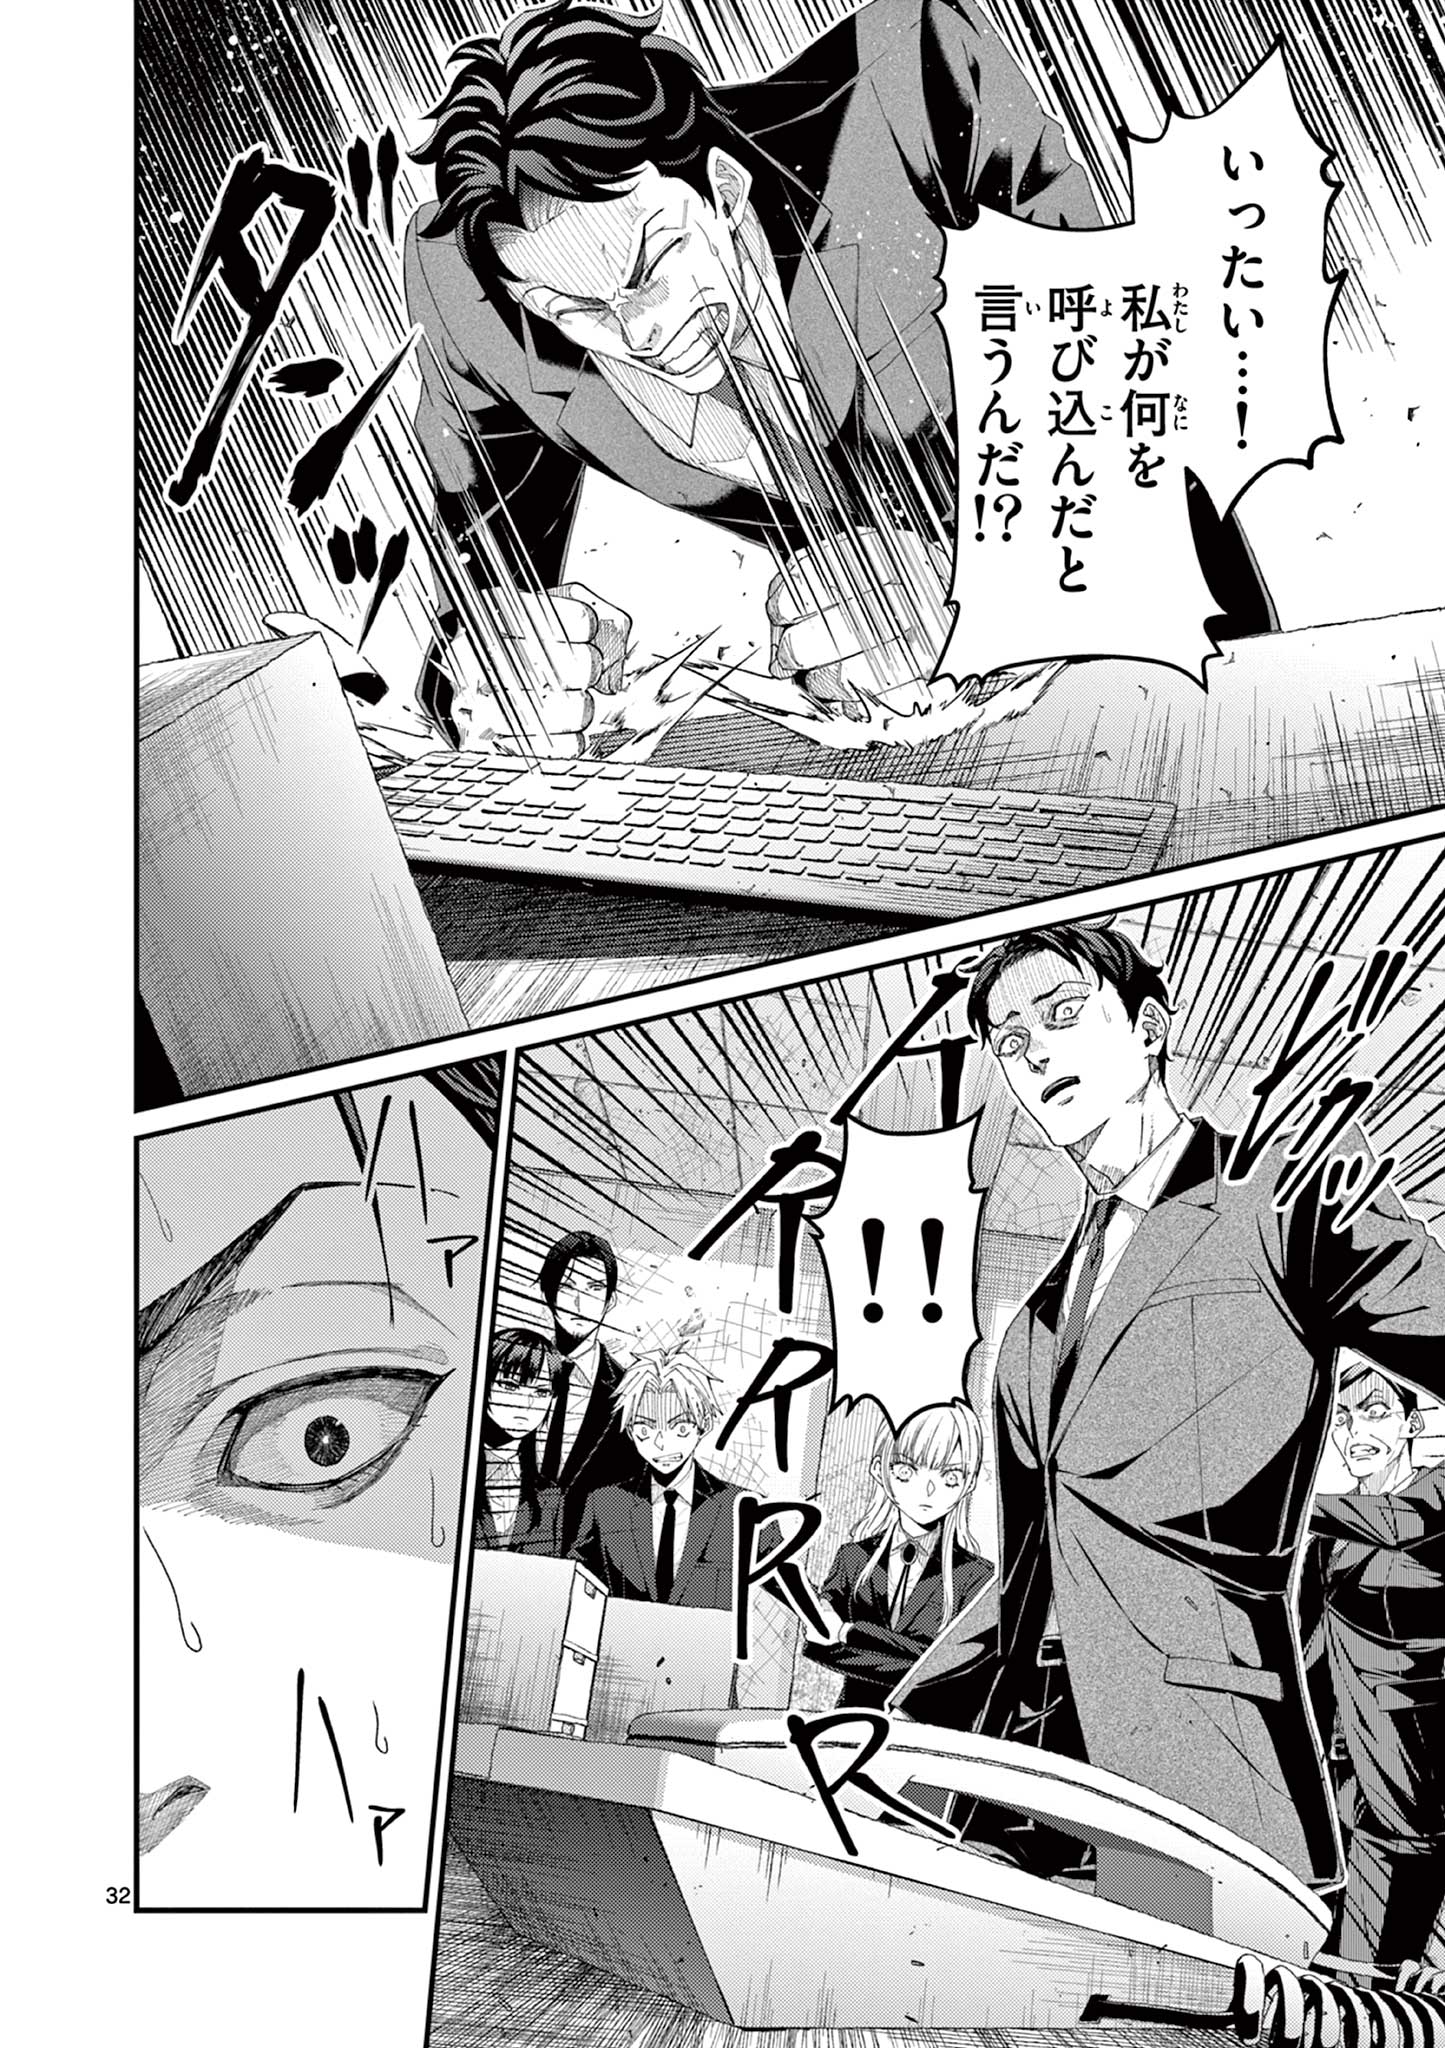 Tsukimonogakari - Chapter 14.3 - Page 4